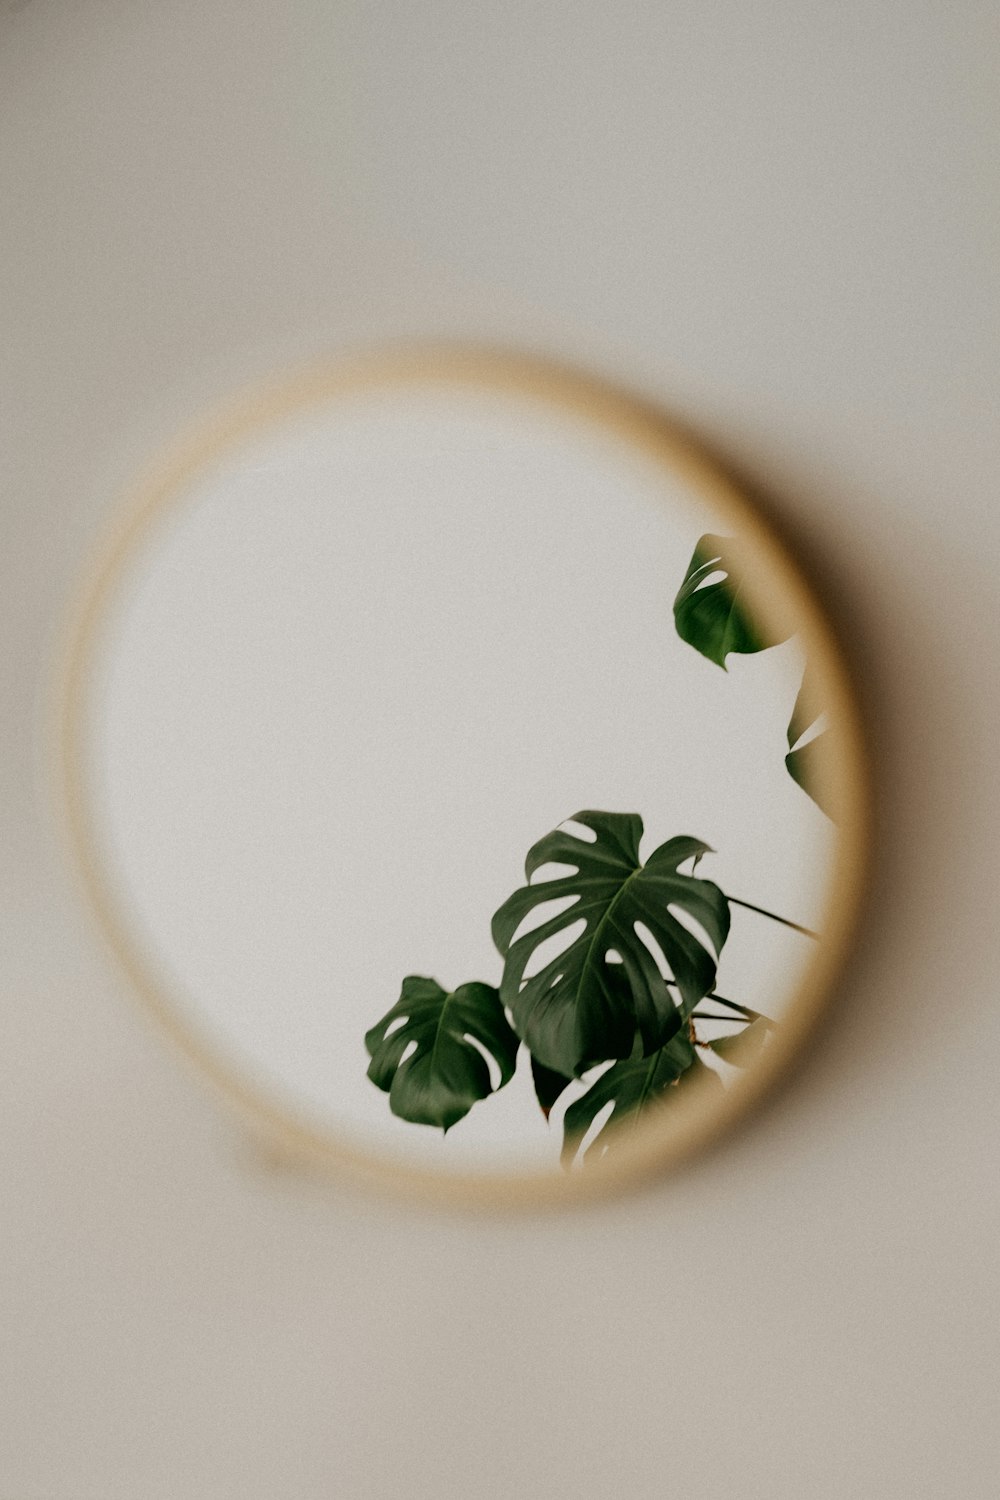 grüne Blätter auf weißer und brauner Keramikplatte